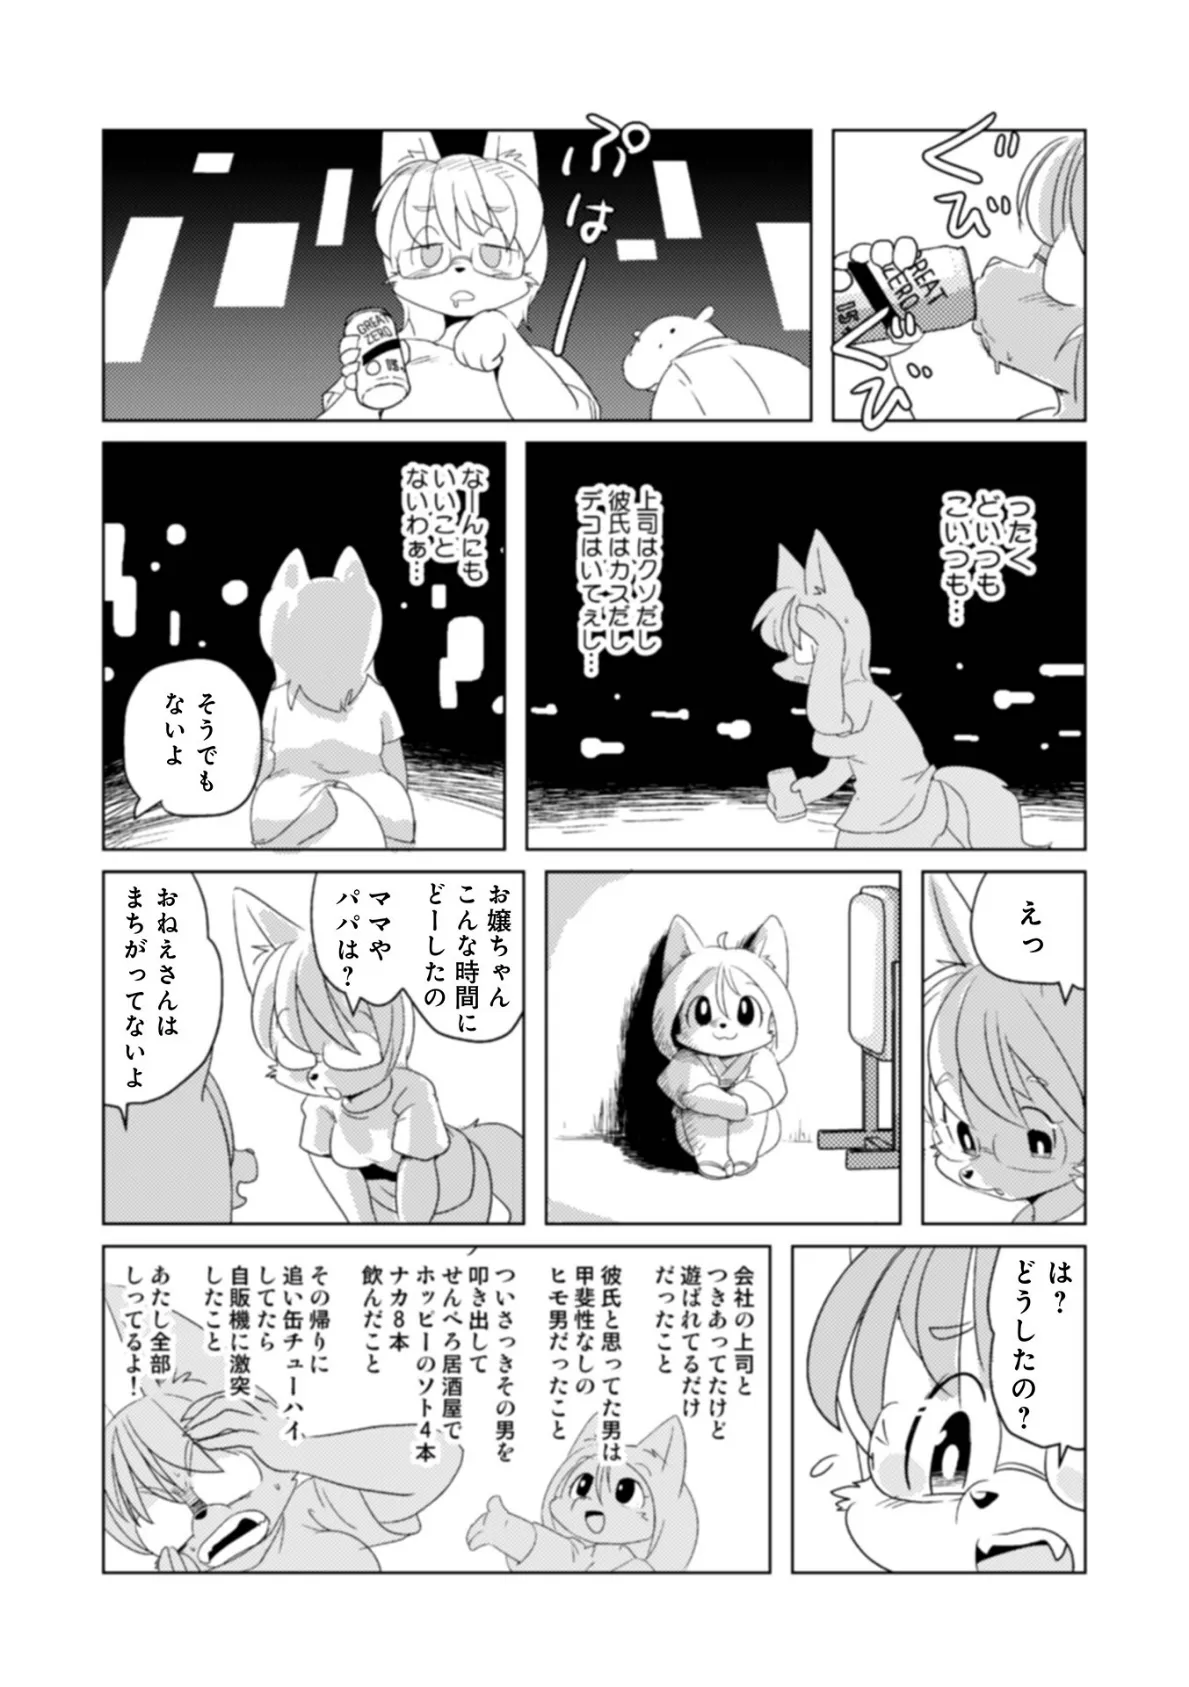 魔界探偵サバトくん第1巻 26ページ